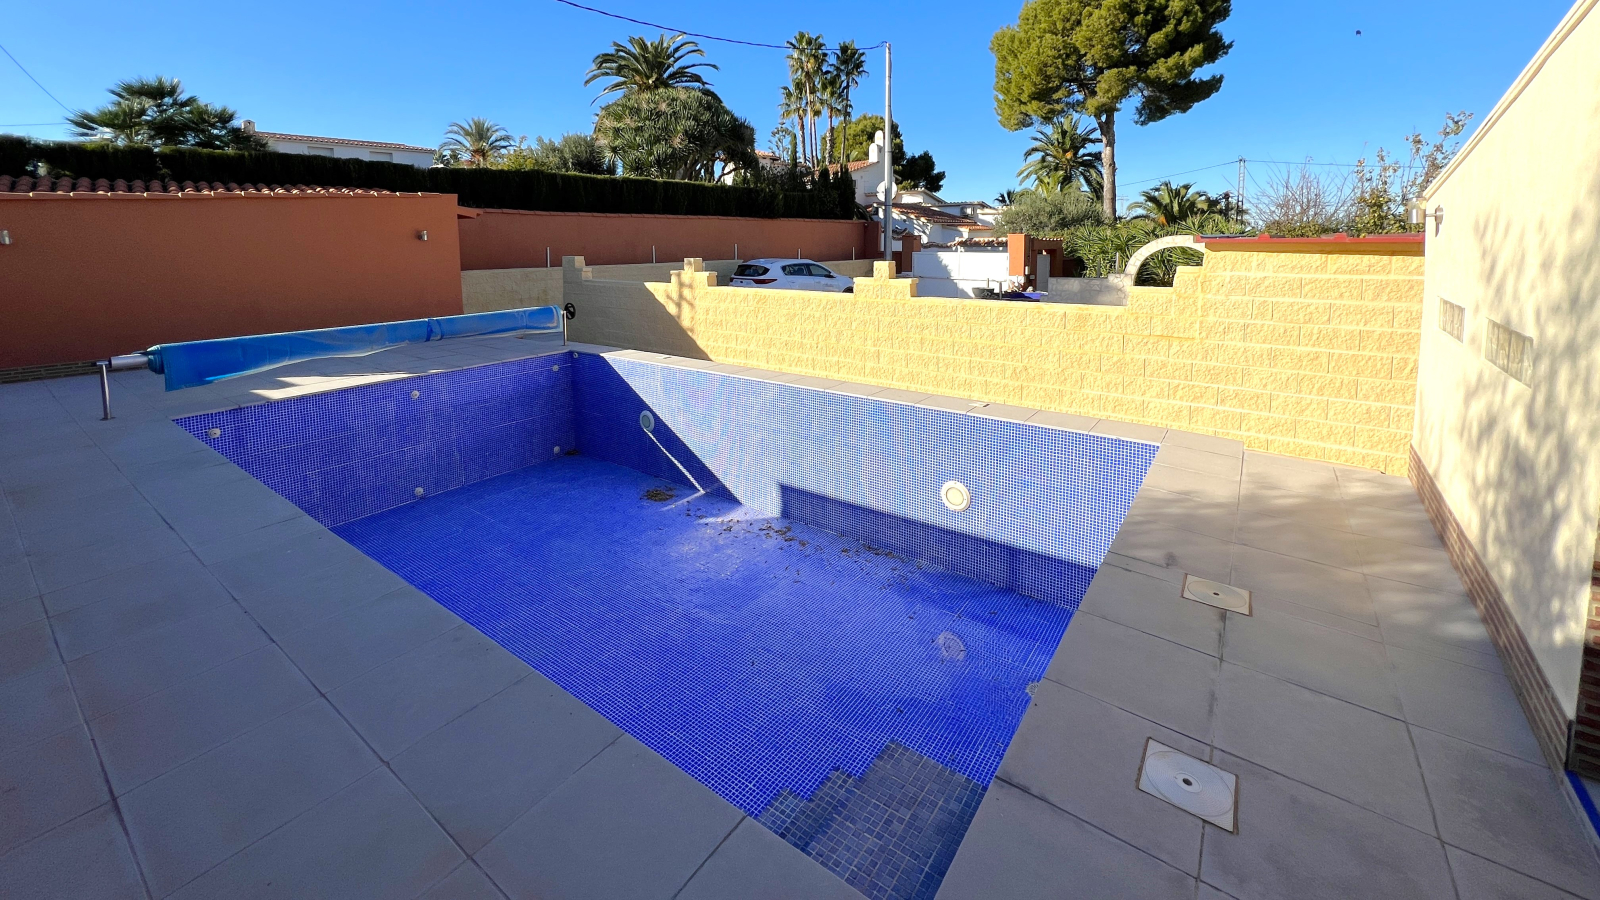 Villa op een rustige locatie met hoge technische voorzieningen, verwarmd zwembad, garage, enz.